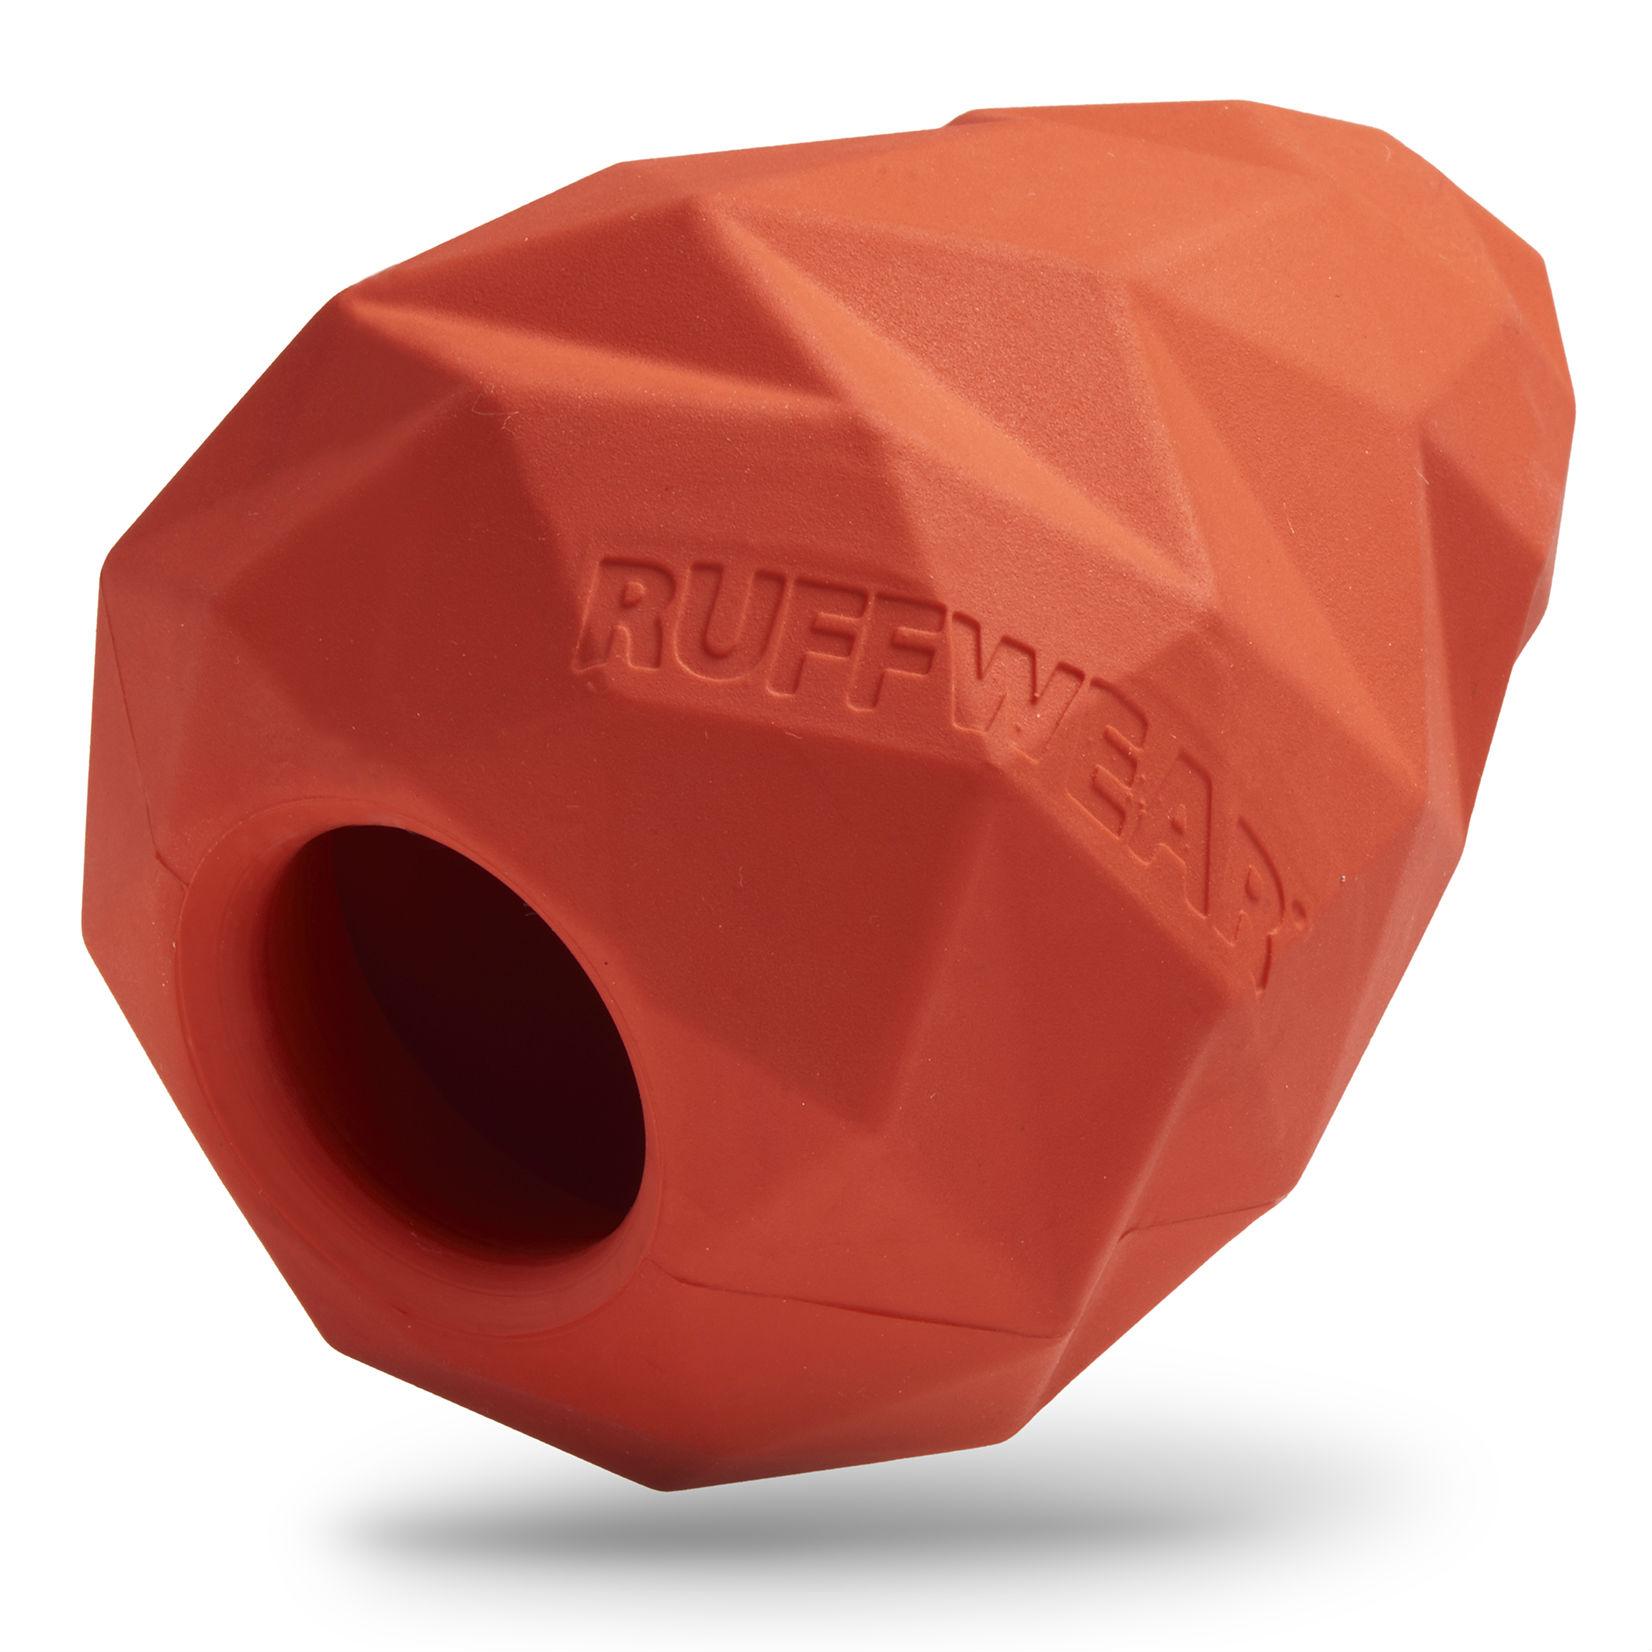 Gnawt-a-Cone Rubber Dog Toy by Ruffwear - Sockeye Red